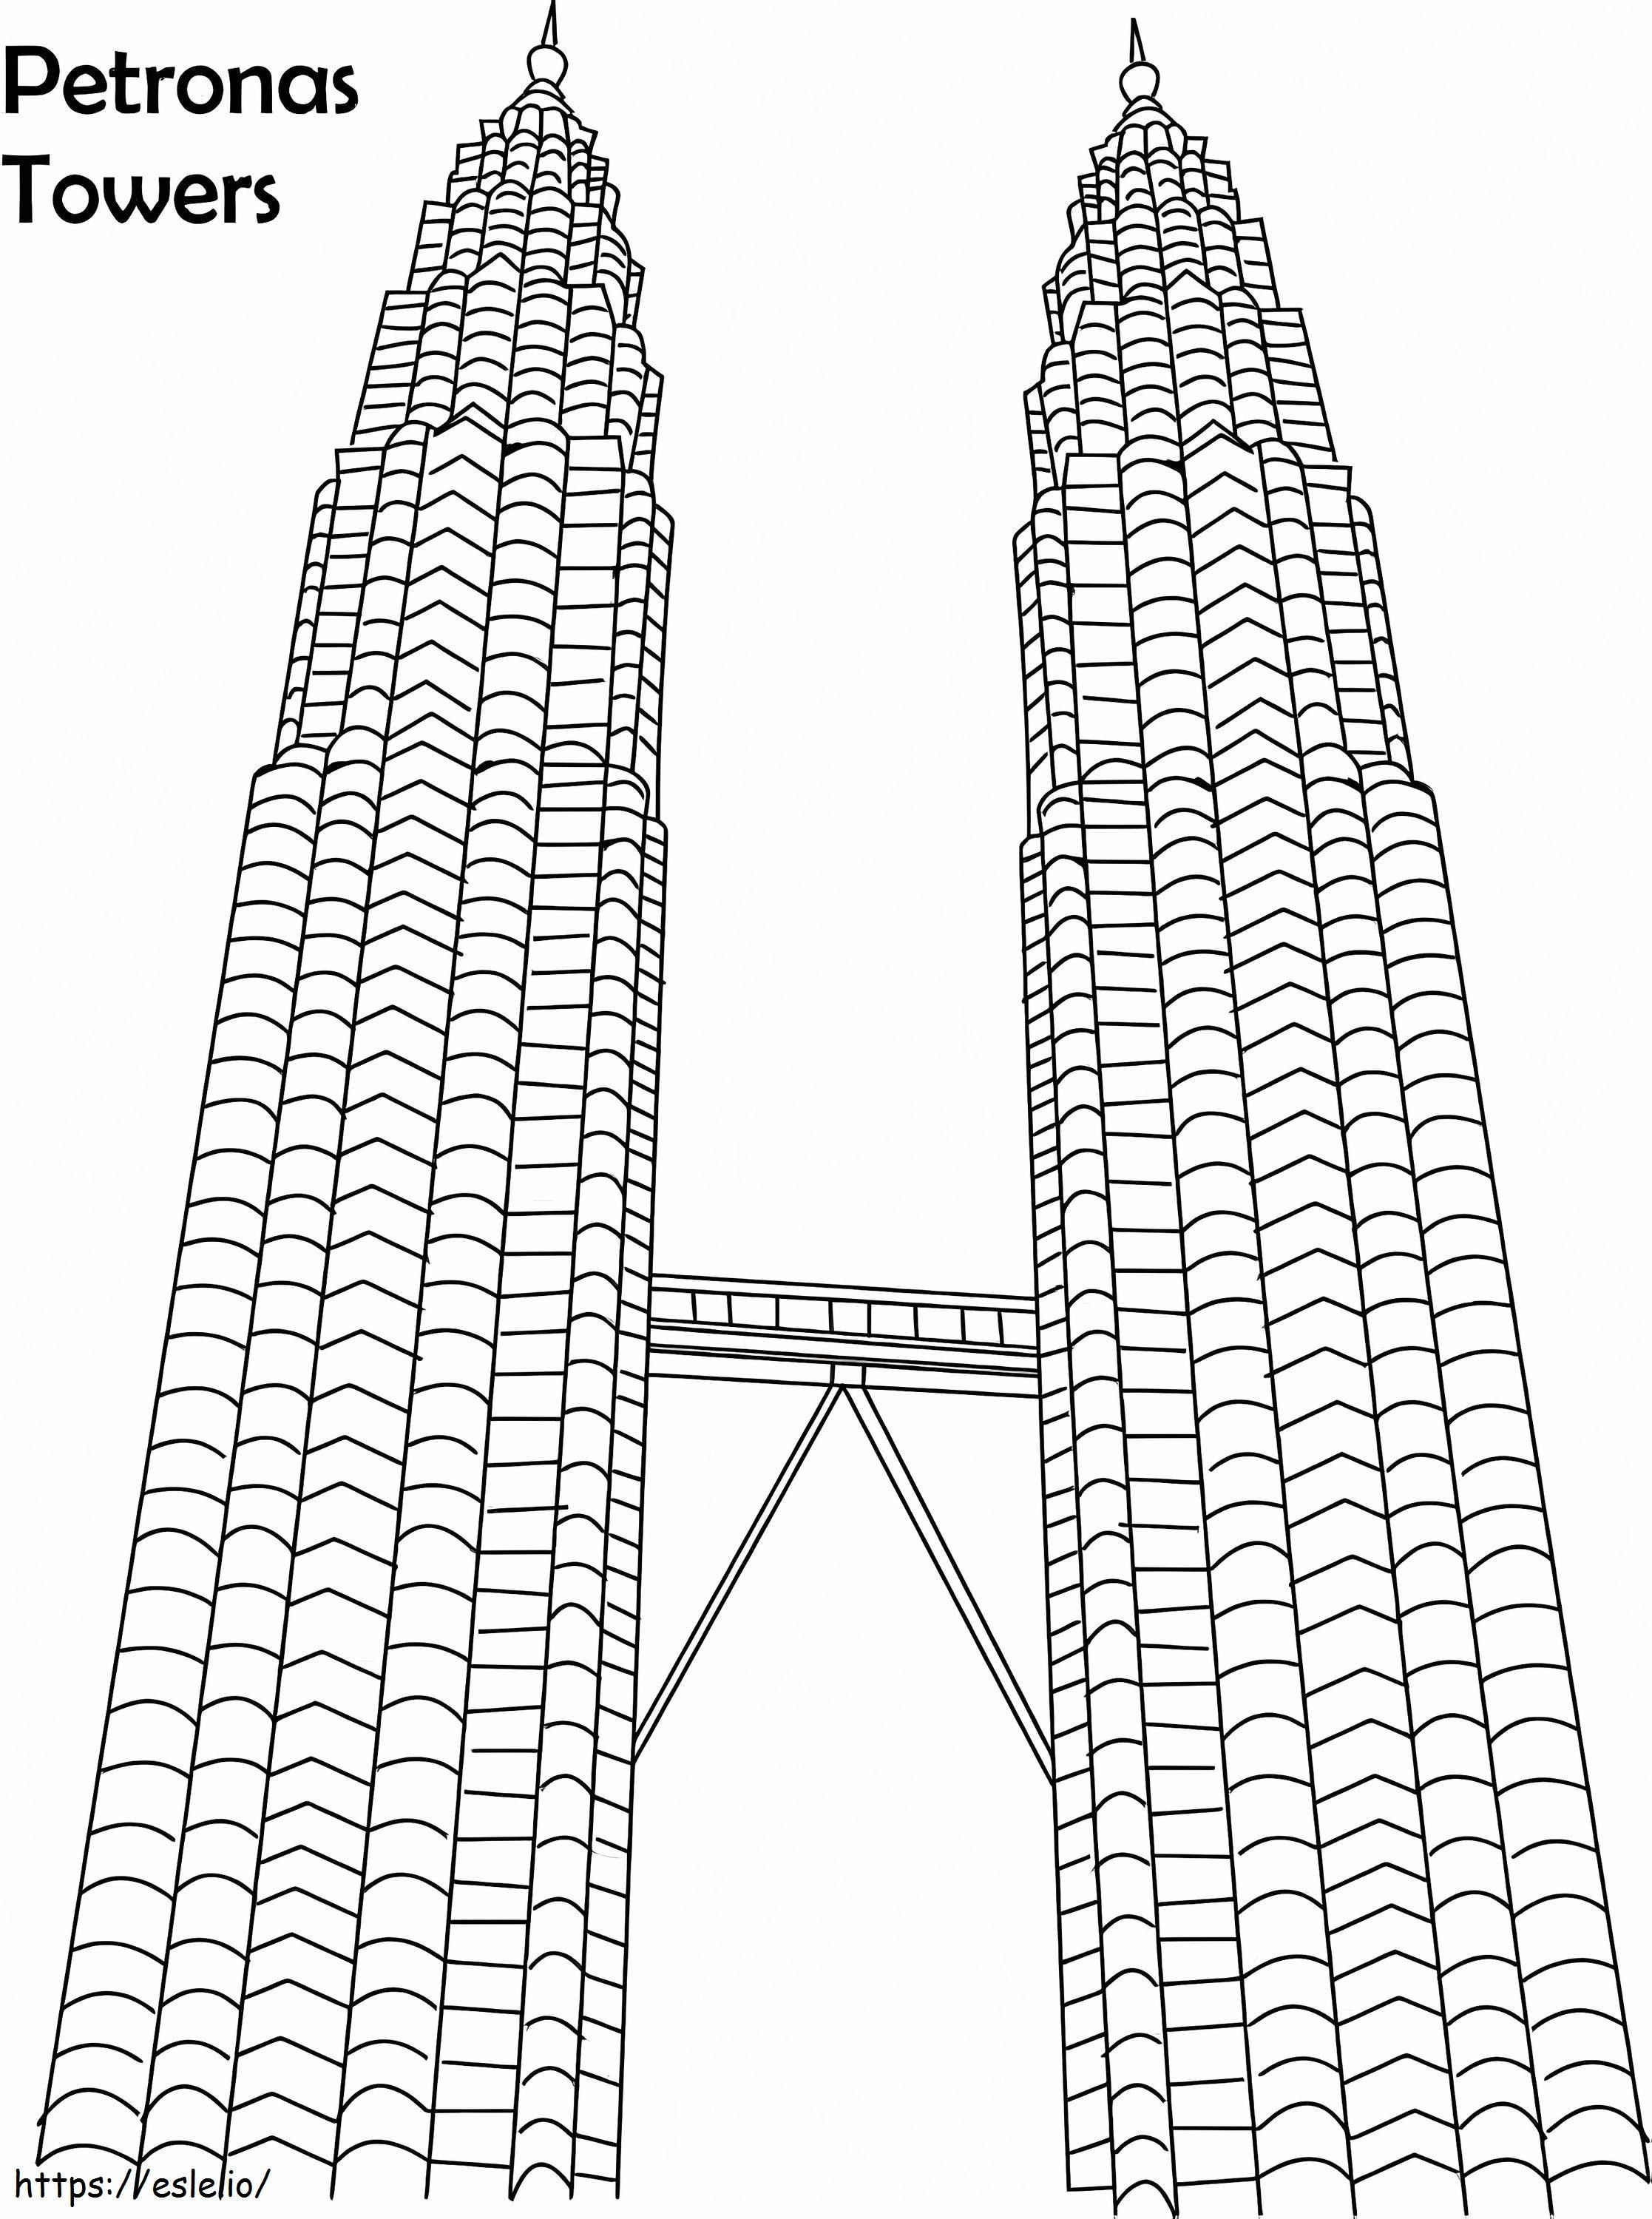 Torres Gêmeas Petronas 1 1 para colorir